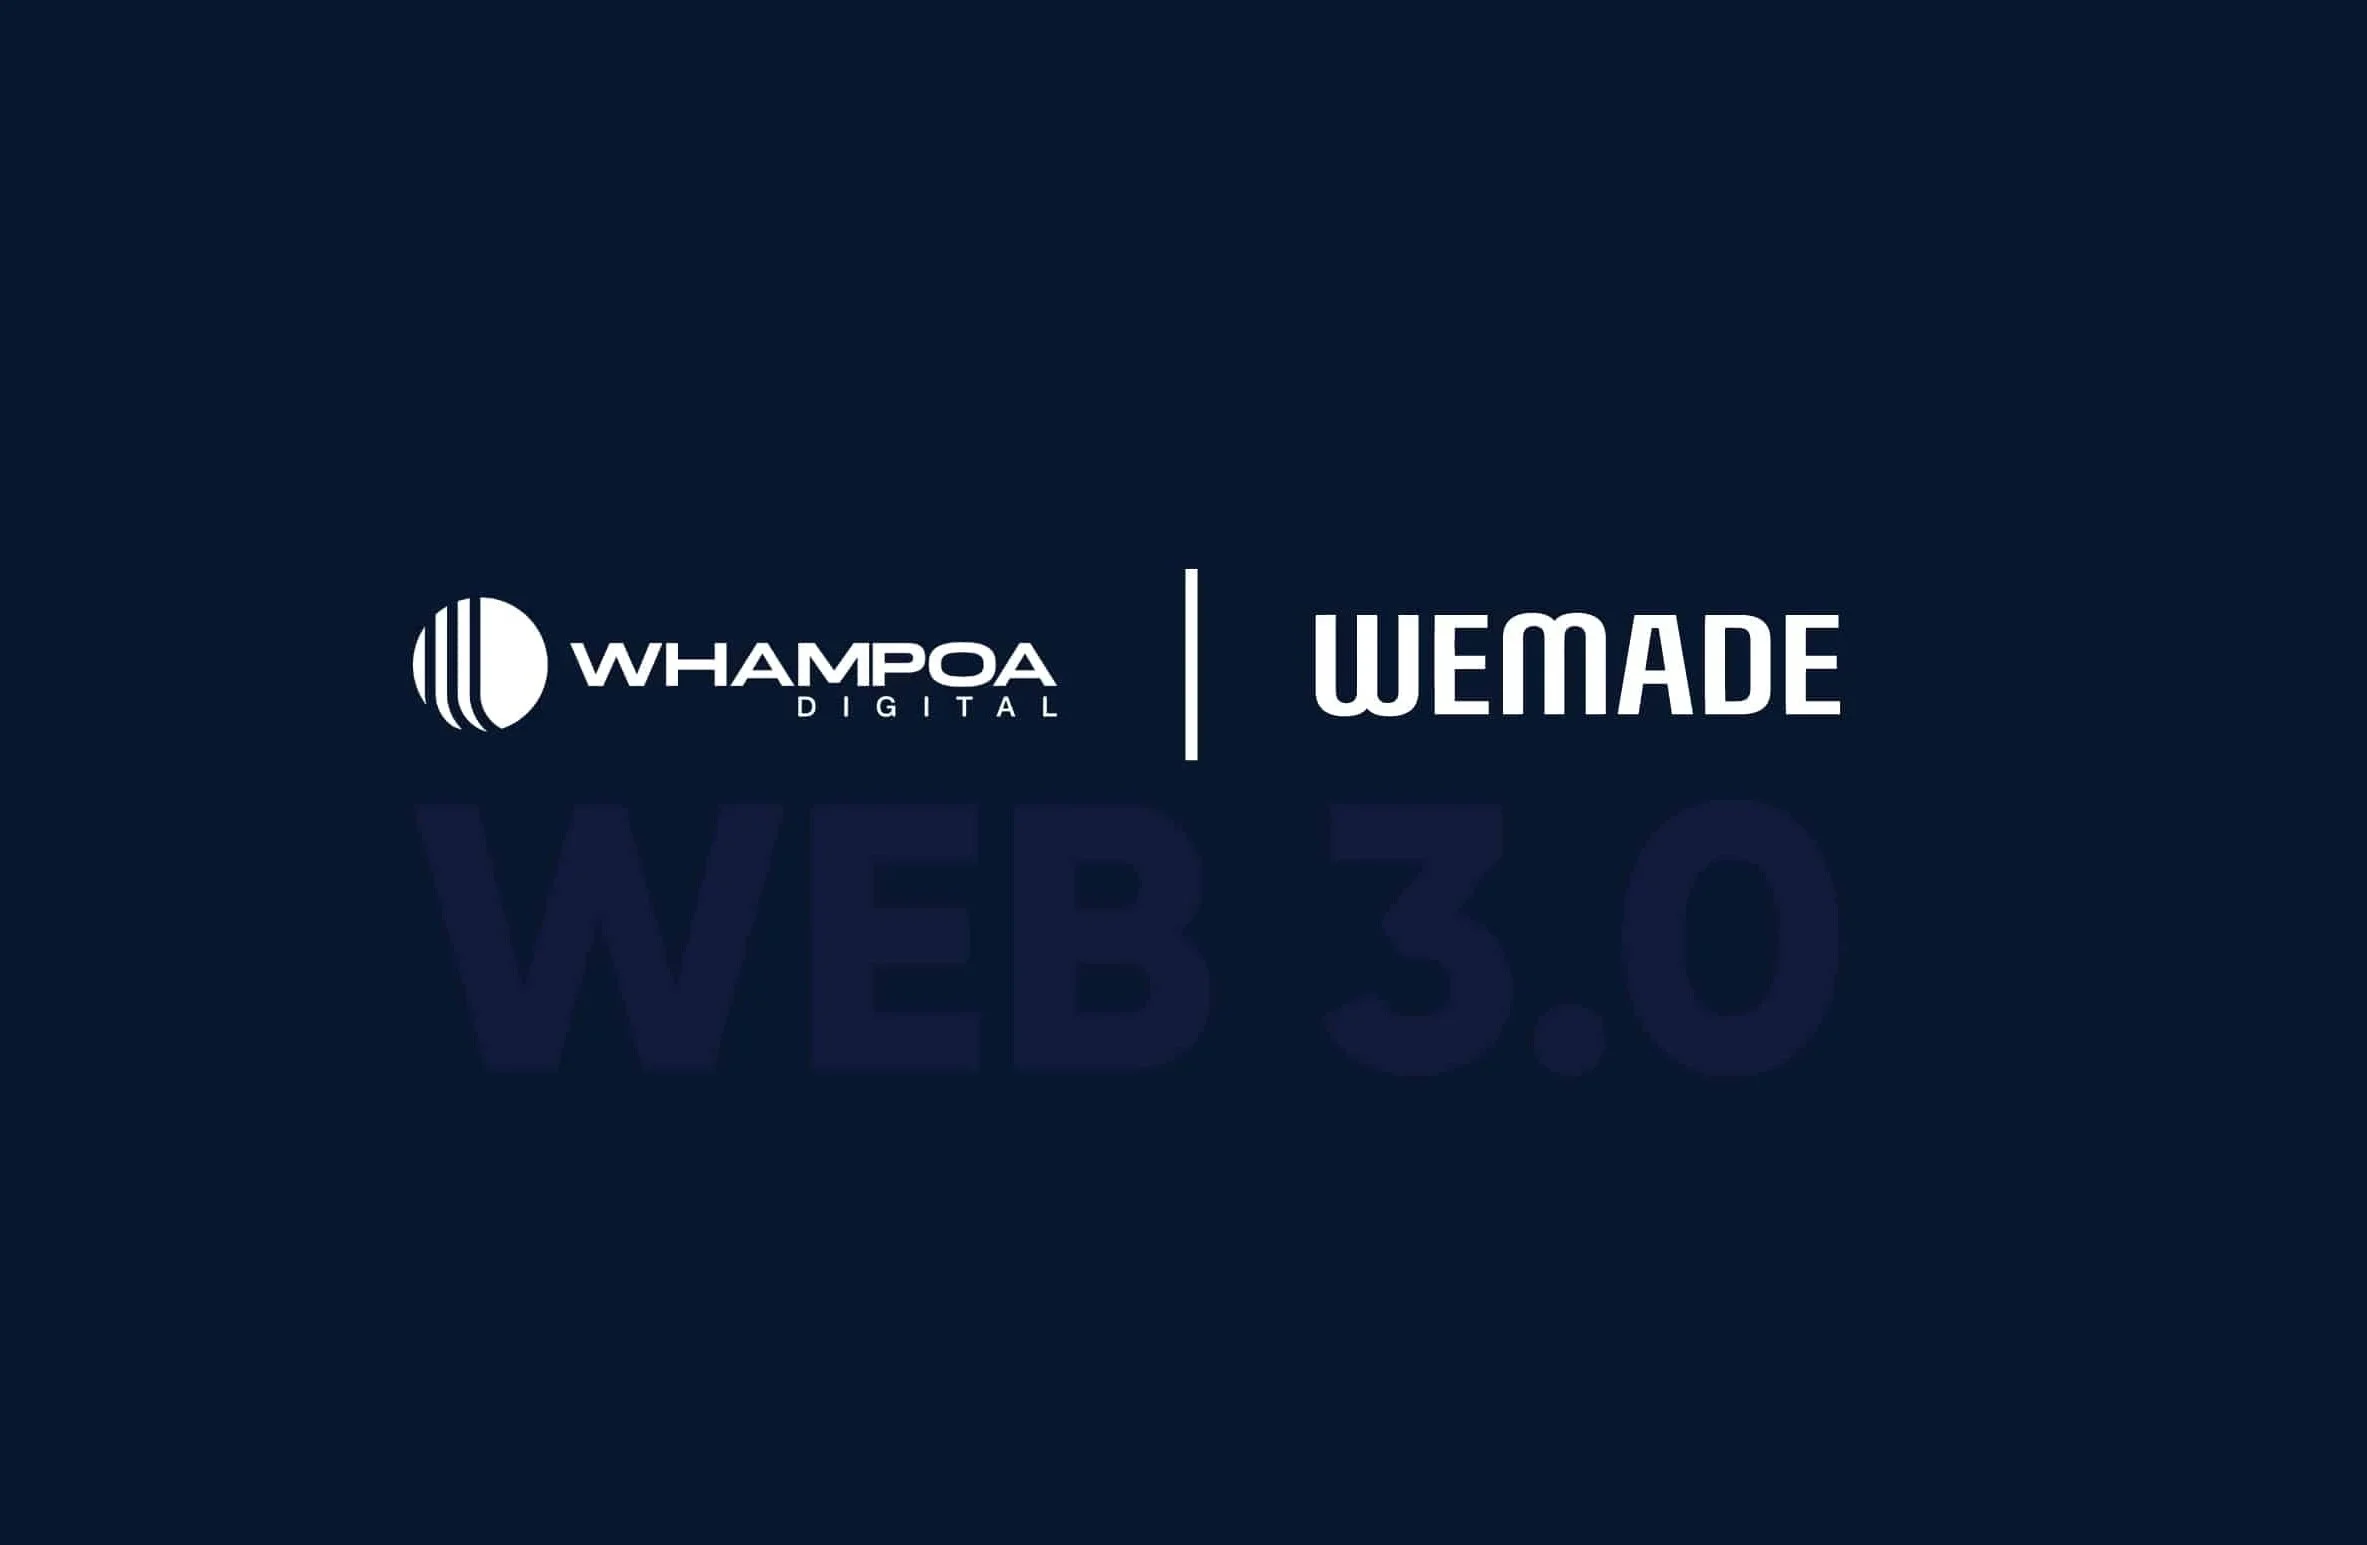 Wemade hợp tác với Whampoa Digital cho các dự án trò chơi Web3